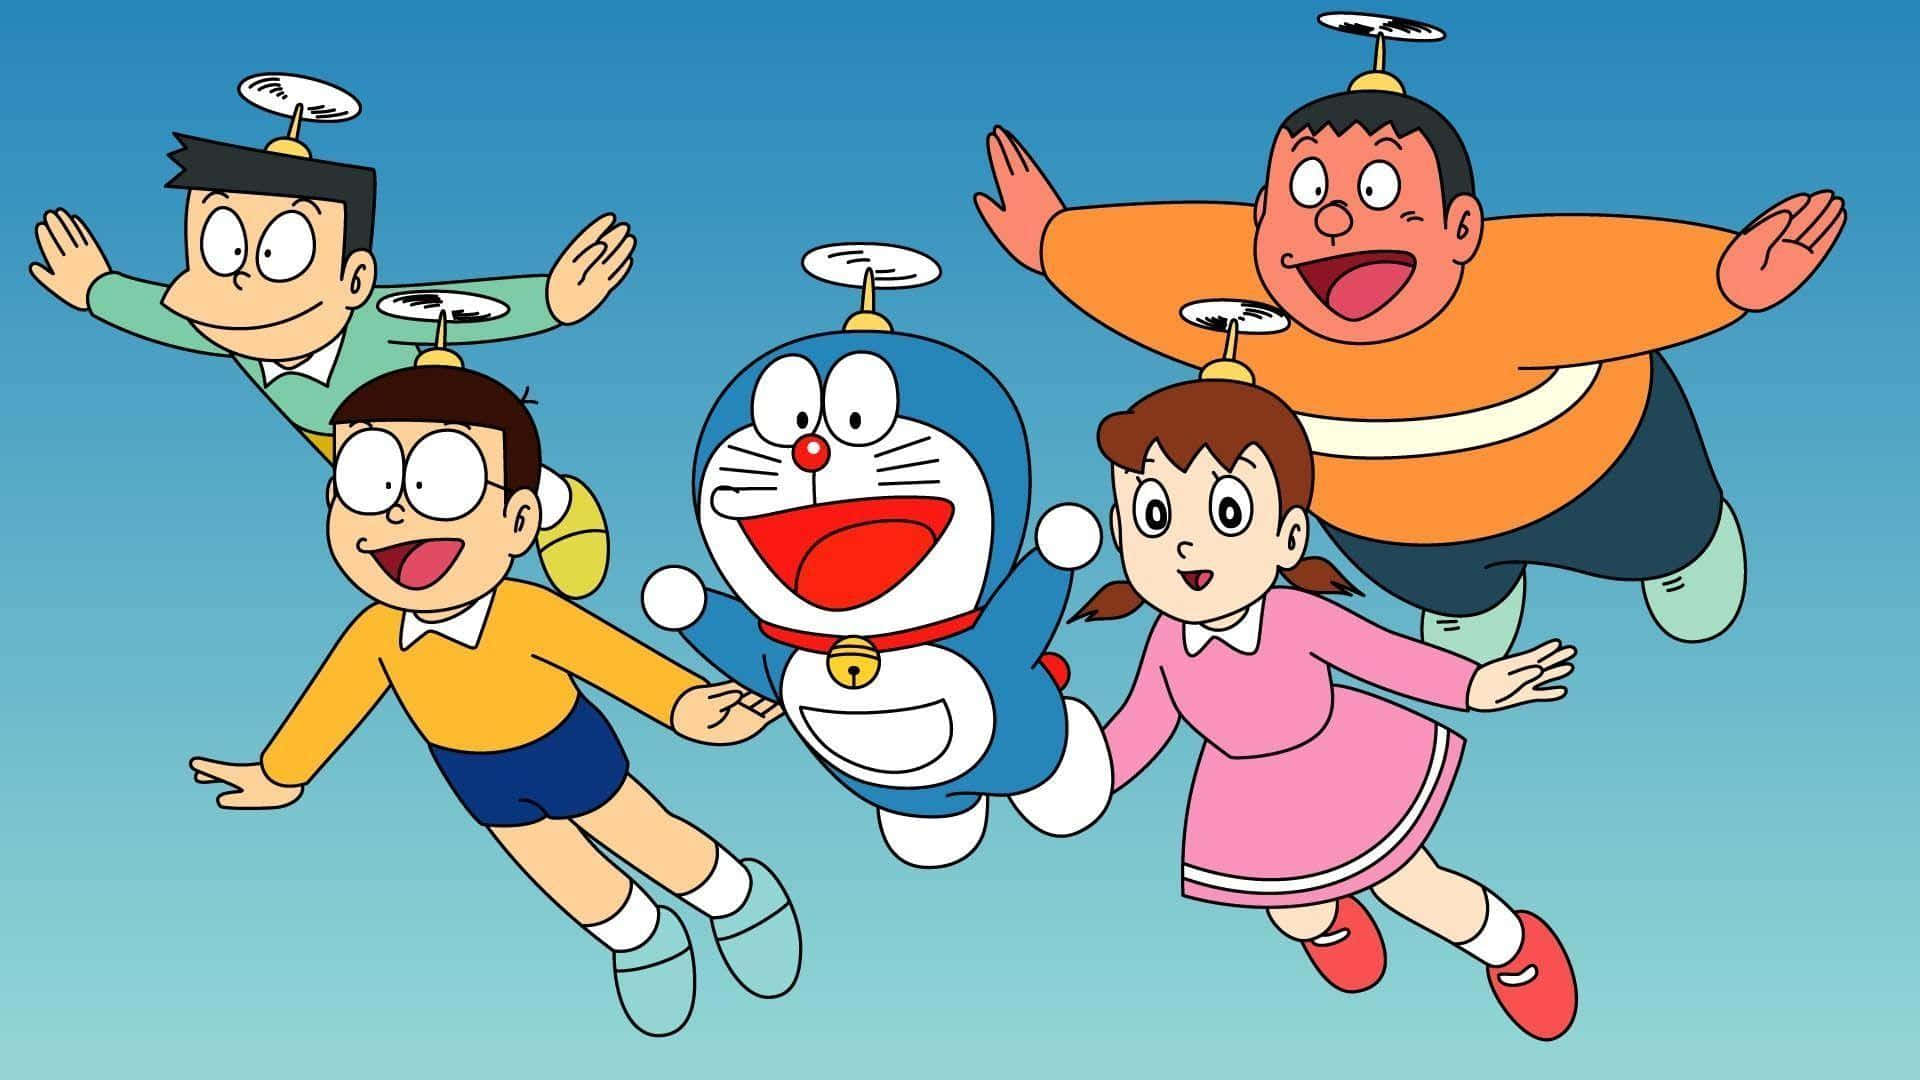 Doraemon Standing in a Flower Field